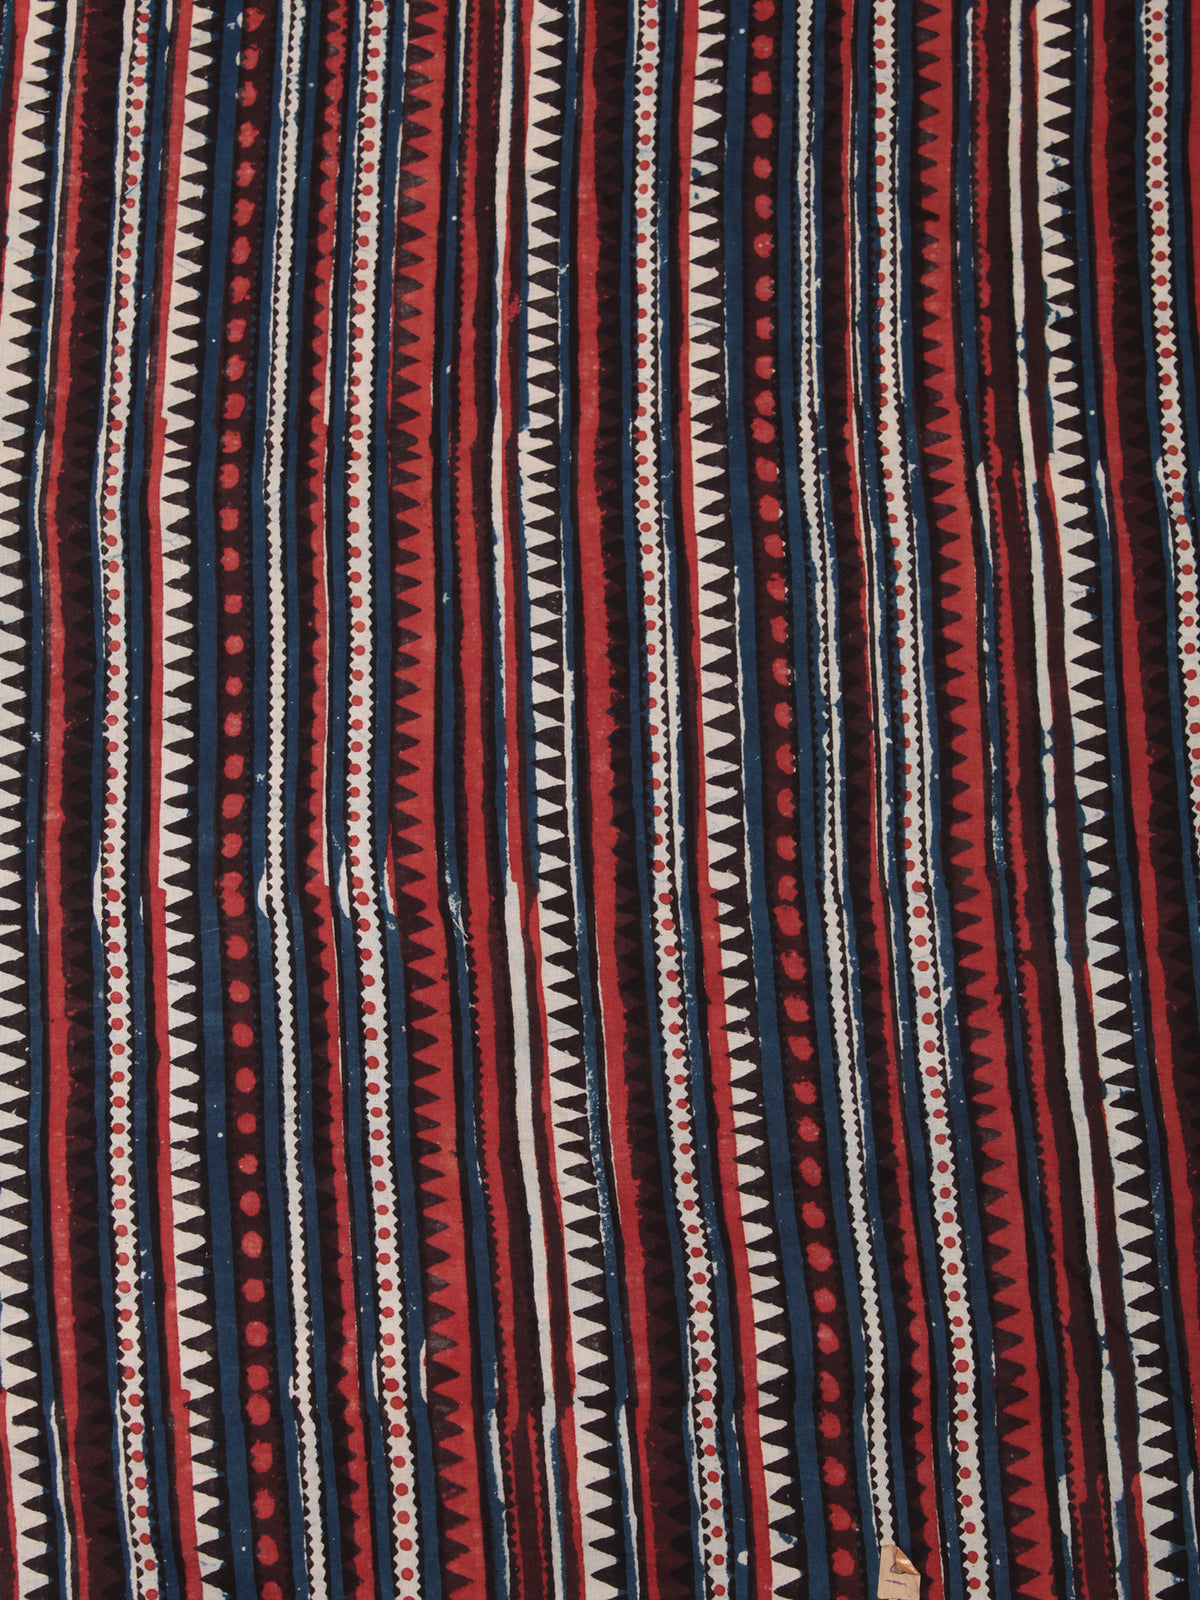 Indigo Rust Black Hand Block Printed Cotton Fabric Per Meter - F001F2449